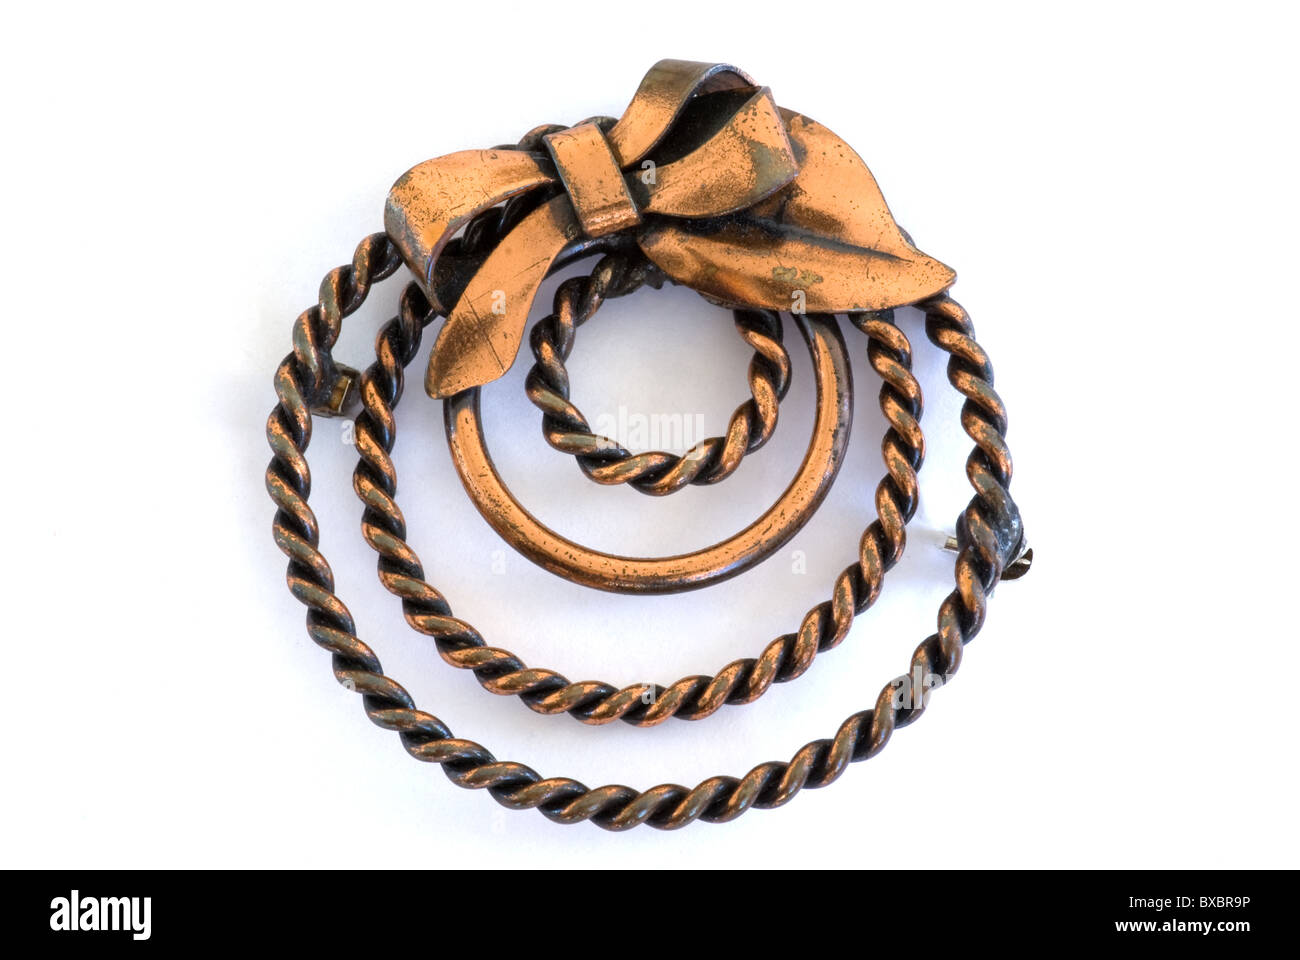 Broche ou broche en cuivre des années 1950 vintage de forme circulaire avec un noeud attaché au sommet. La goupille ressemble à une forme moderne de couronne. Banque D'Images